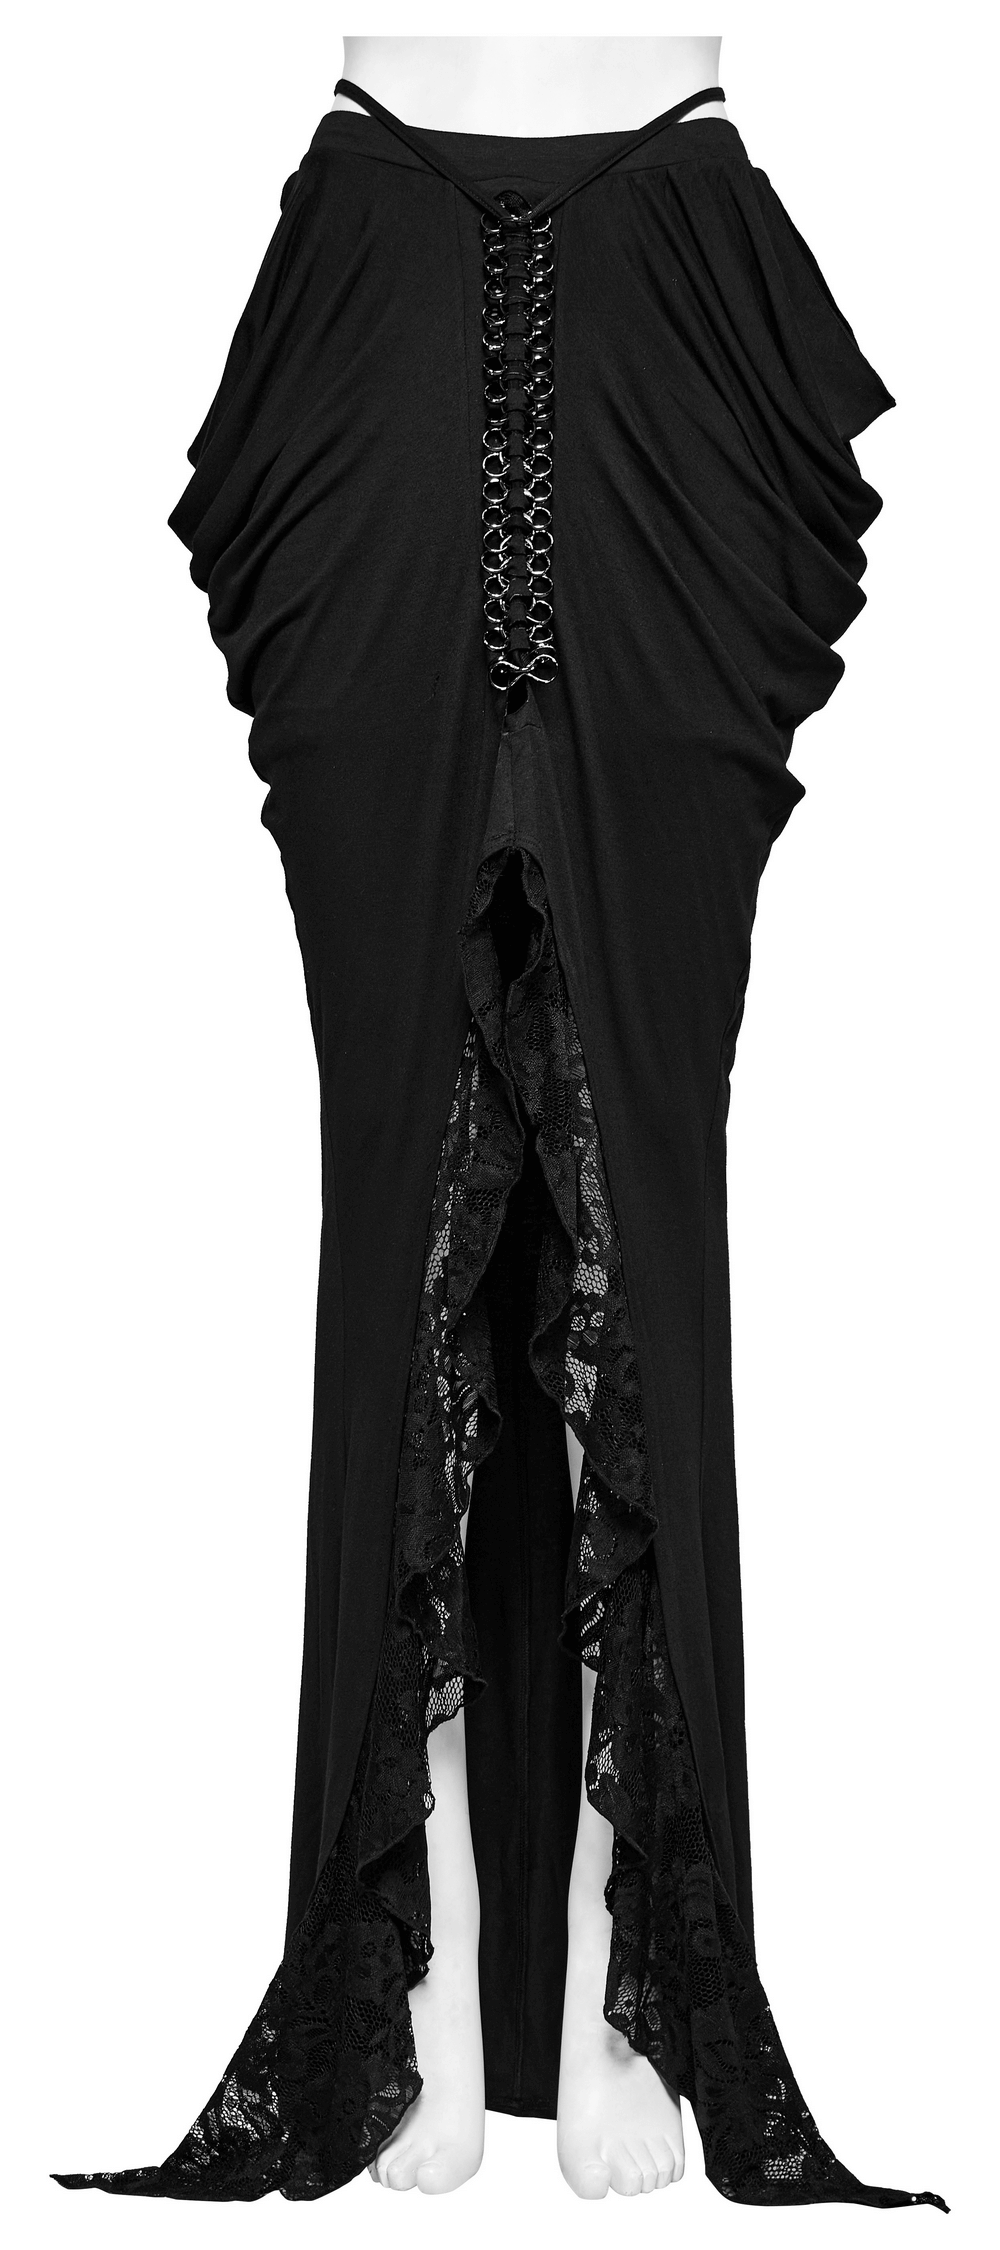 Jupe gothique élégante décorée de dentelle et de chaîne